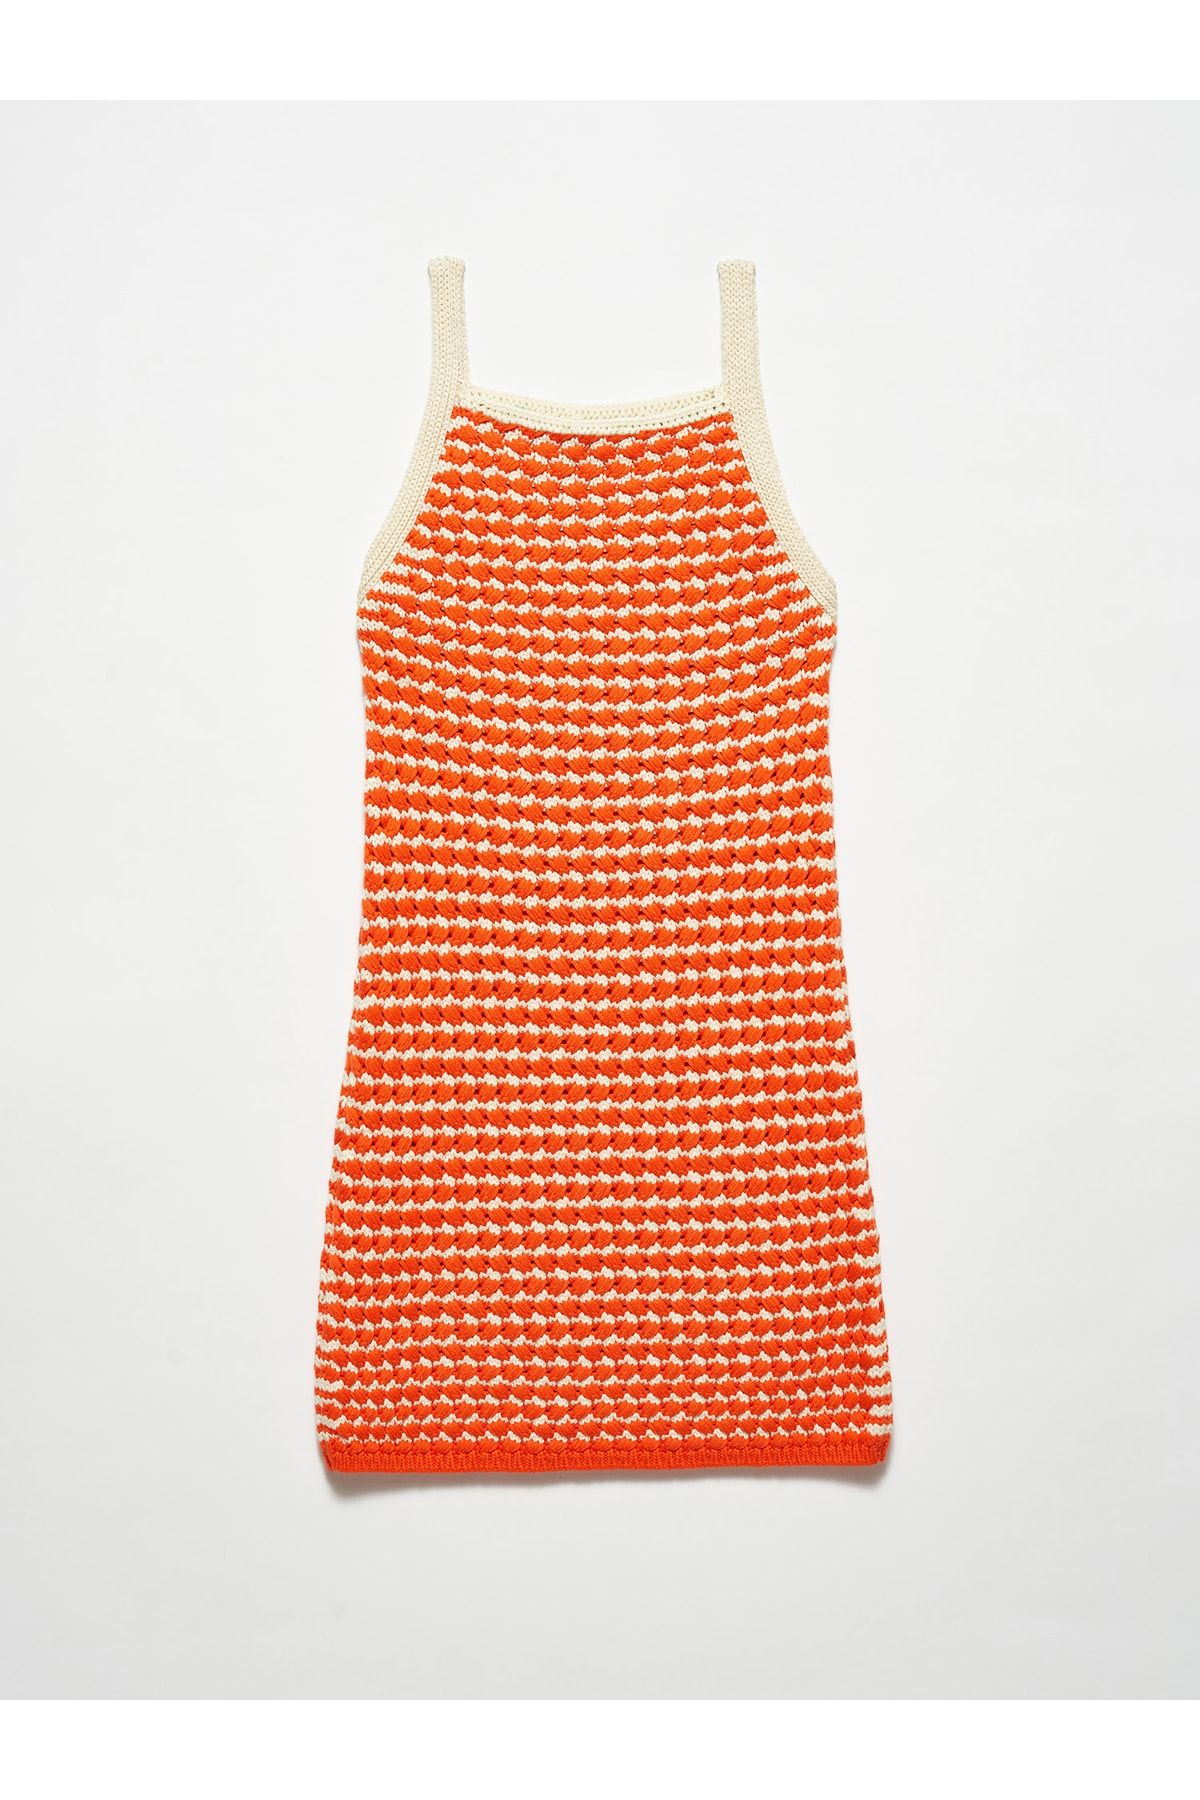 Dilvin 90115 Kalın Dokulu Triko Elbise-turuncu